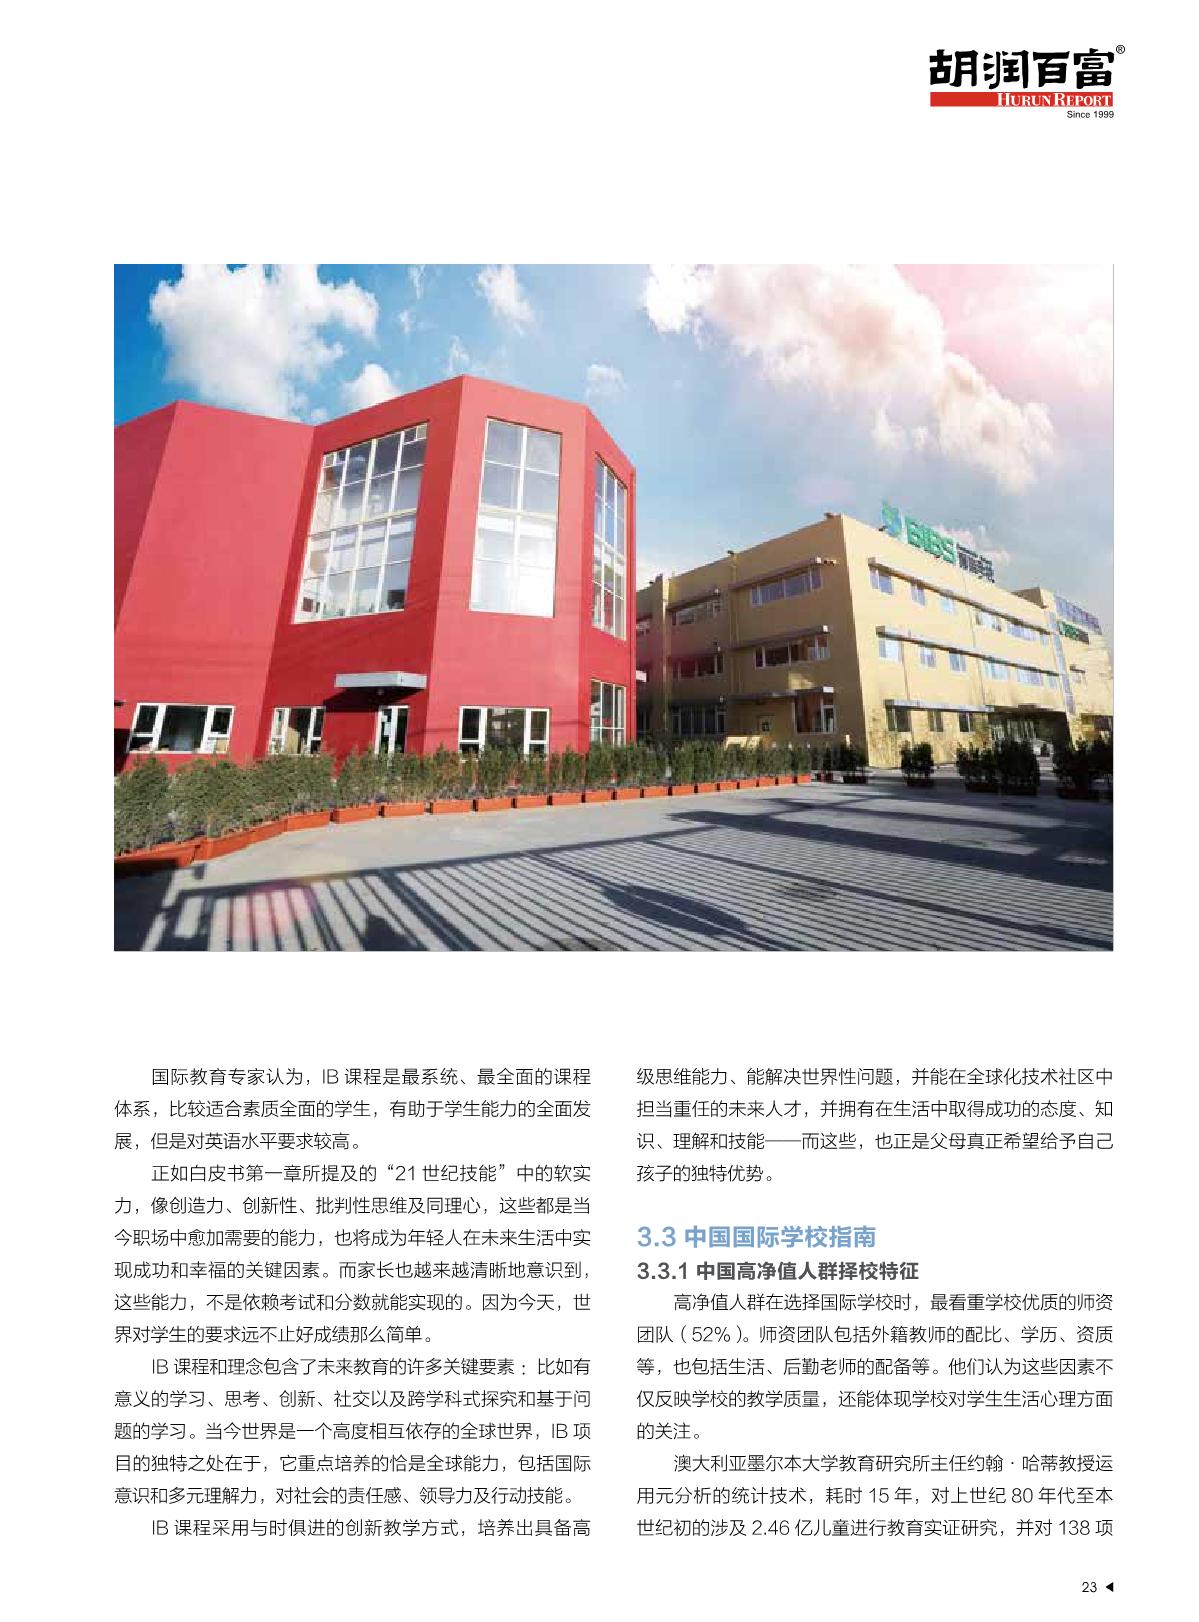 2021中国国际教育白皮书_24